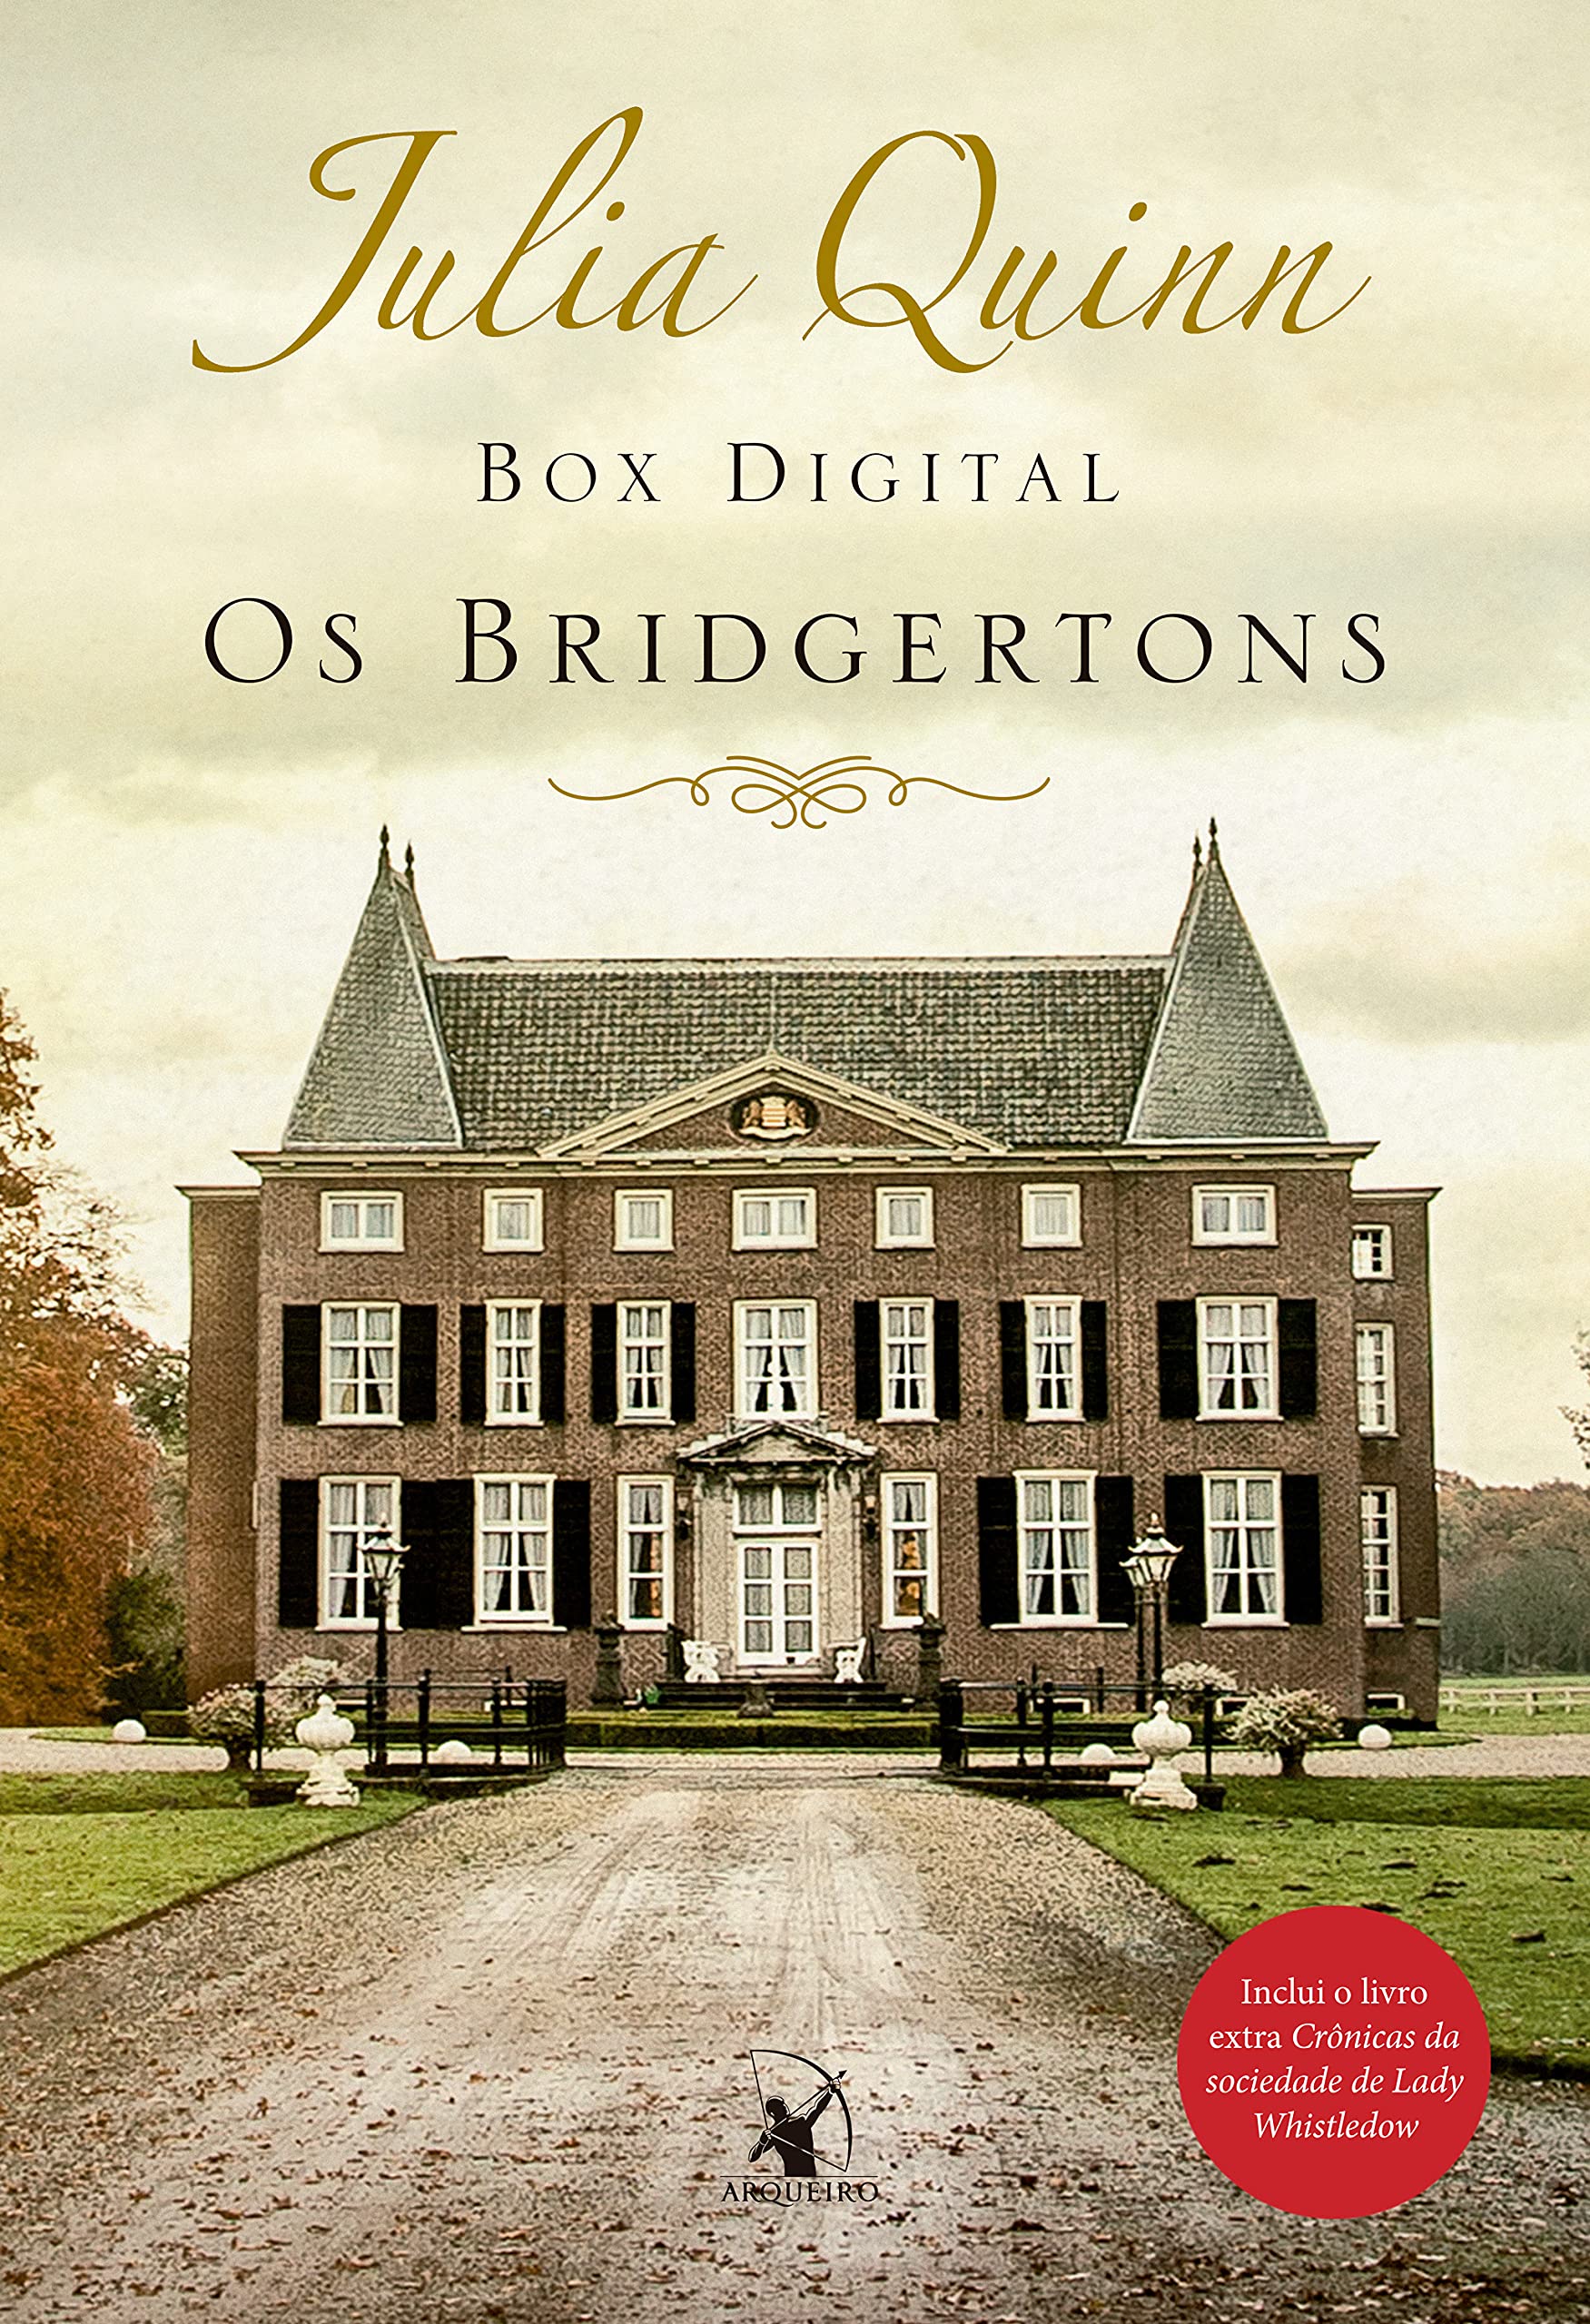 Box Digital – Os Bridgertons: Os 9 títulos da série + livro extra de crônicas (Portuguese Edition)